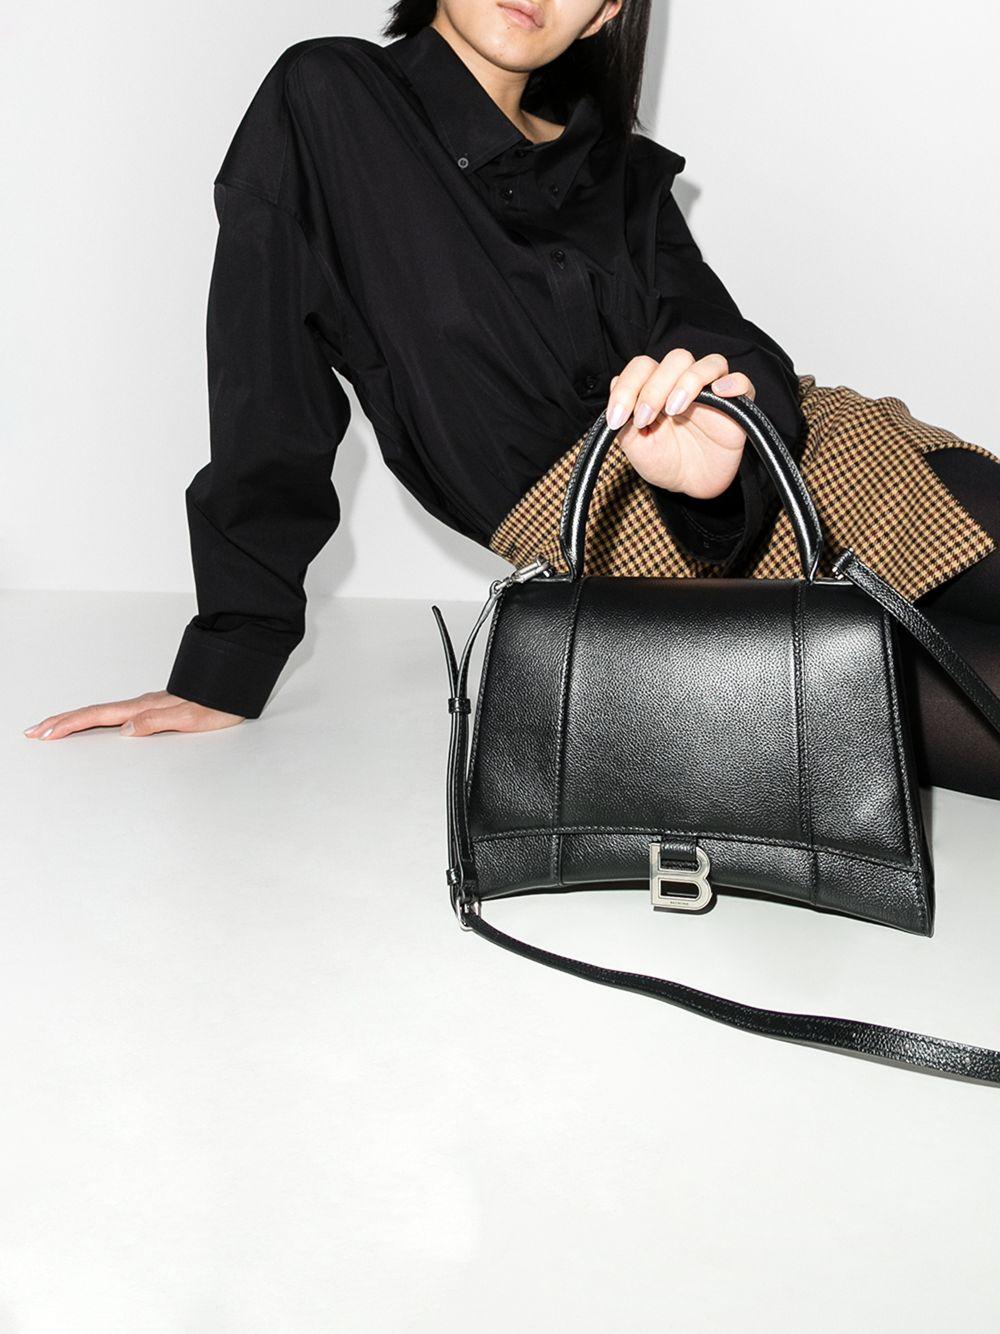 Indtil suge tæerne Balenciaga Hourglass Medium Leather Top Handle Bag in Black | Lyst